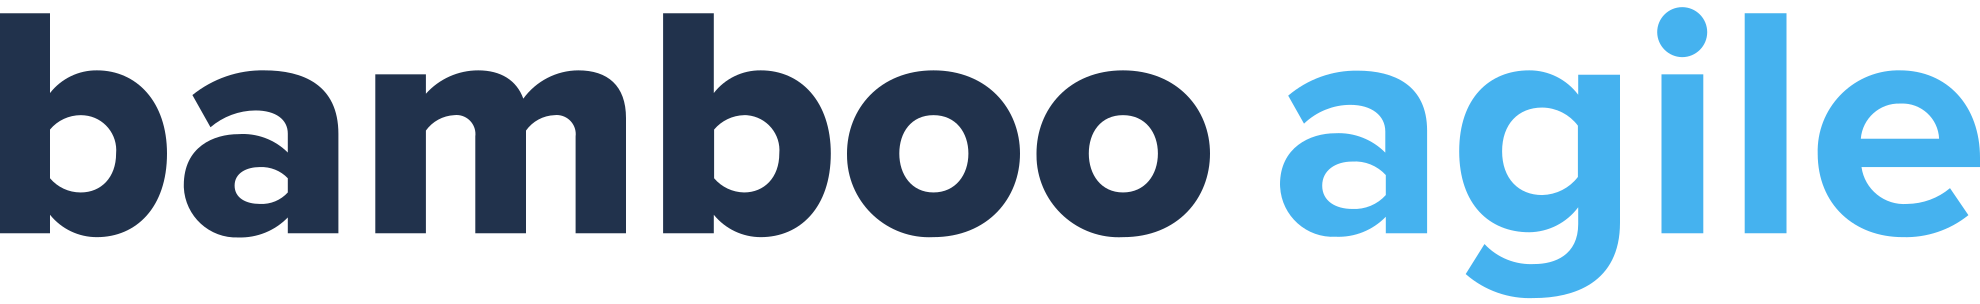 Bamboo agile logo